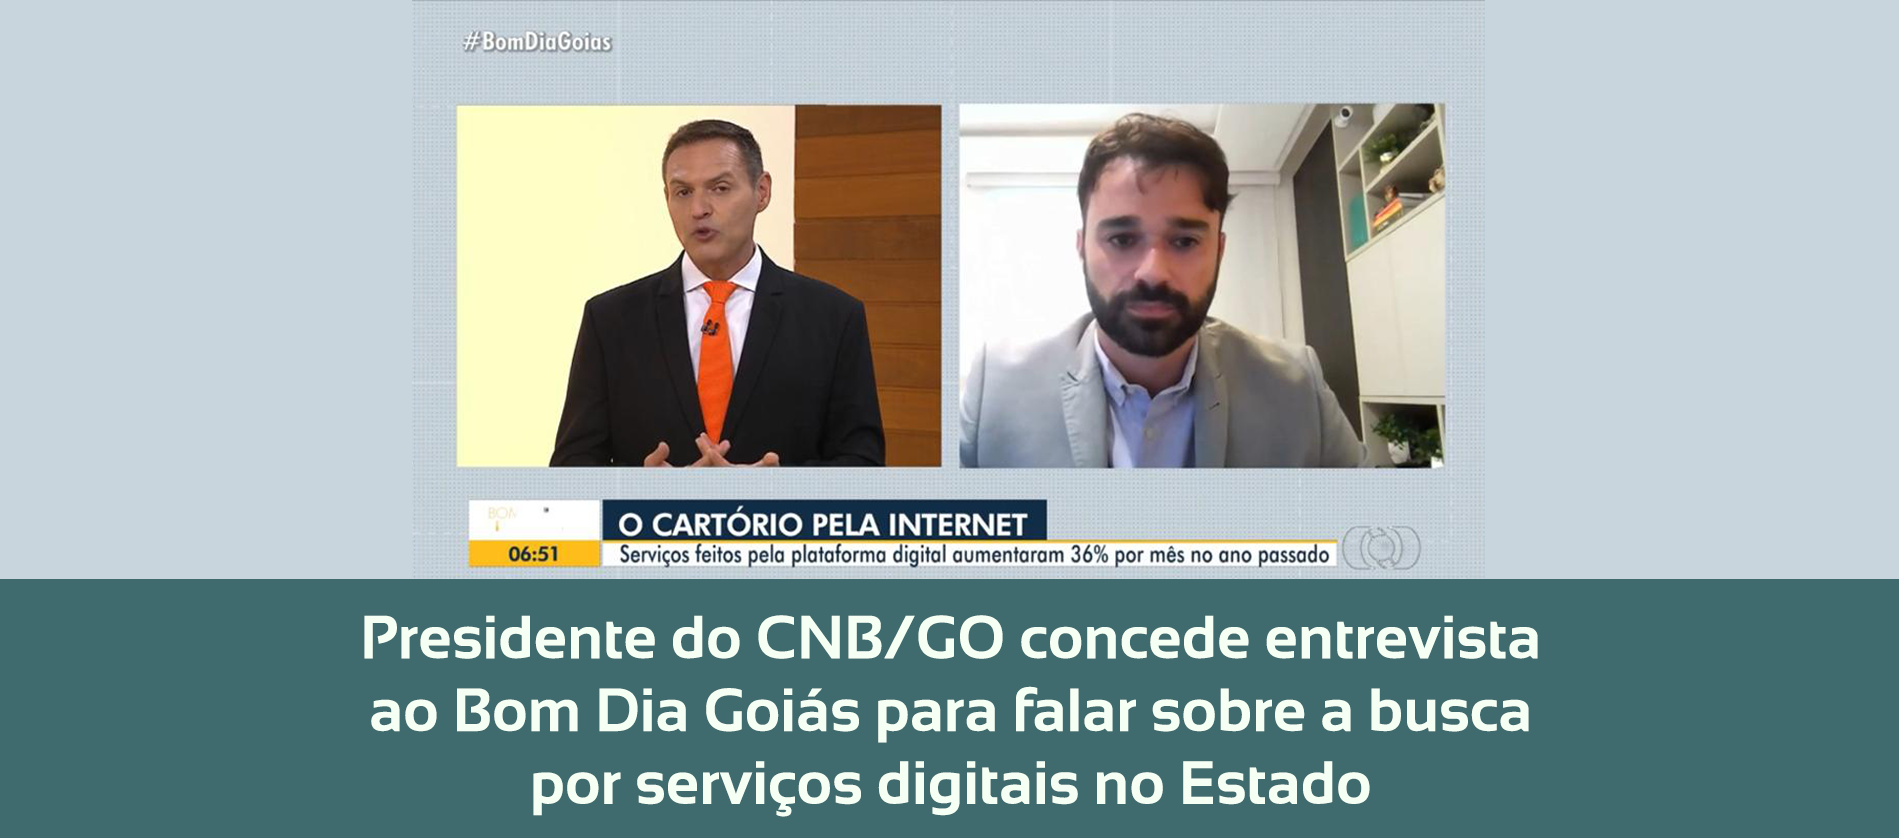 Presidente Do CNB/GO Concede Entrevista Ao Bom Dia Goiás Para Falar Sobre A Busca Por Serviços Digitais No Estado